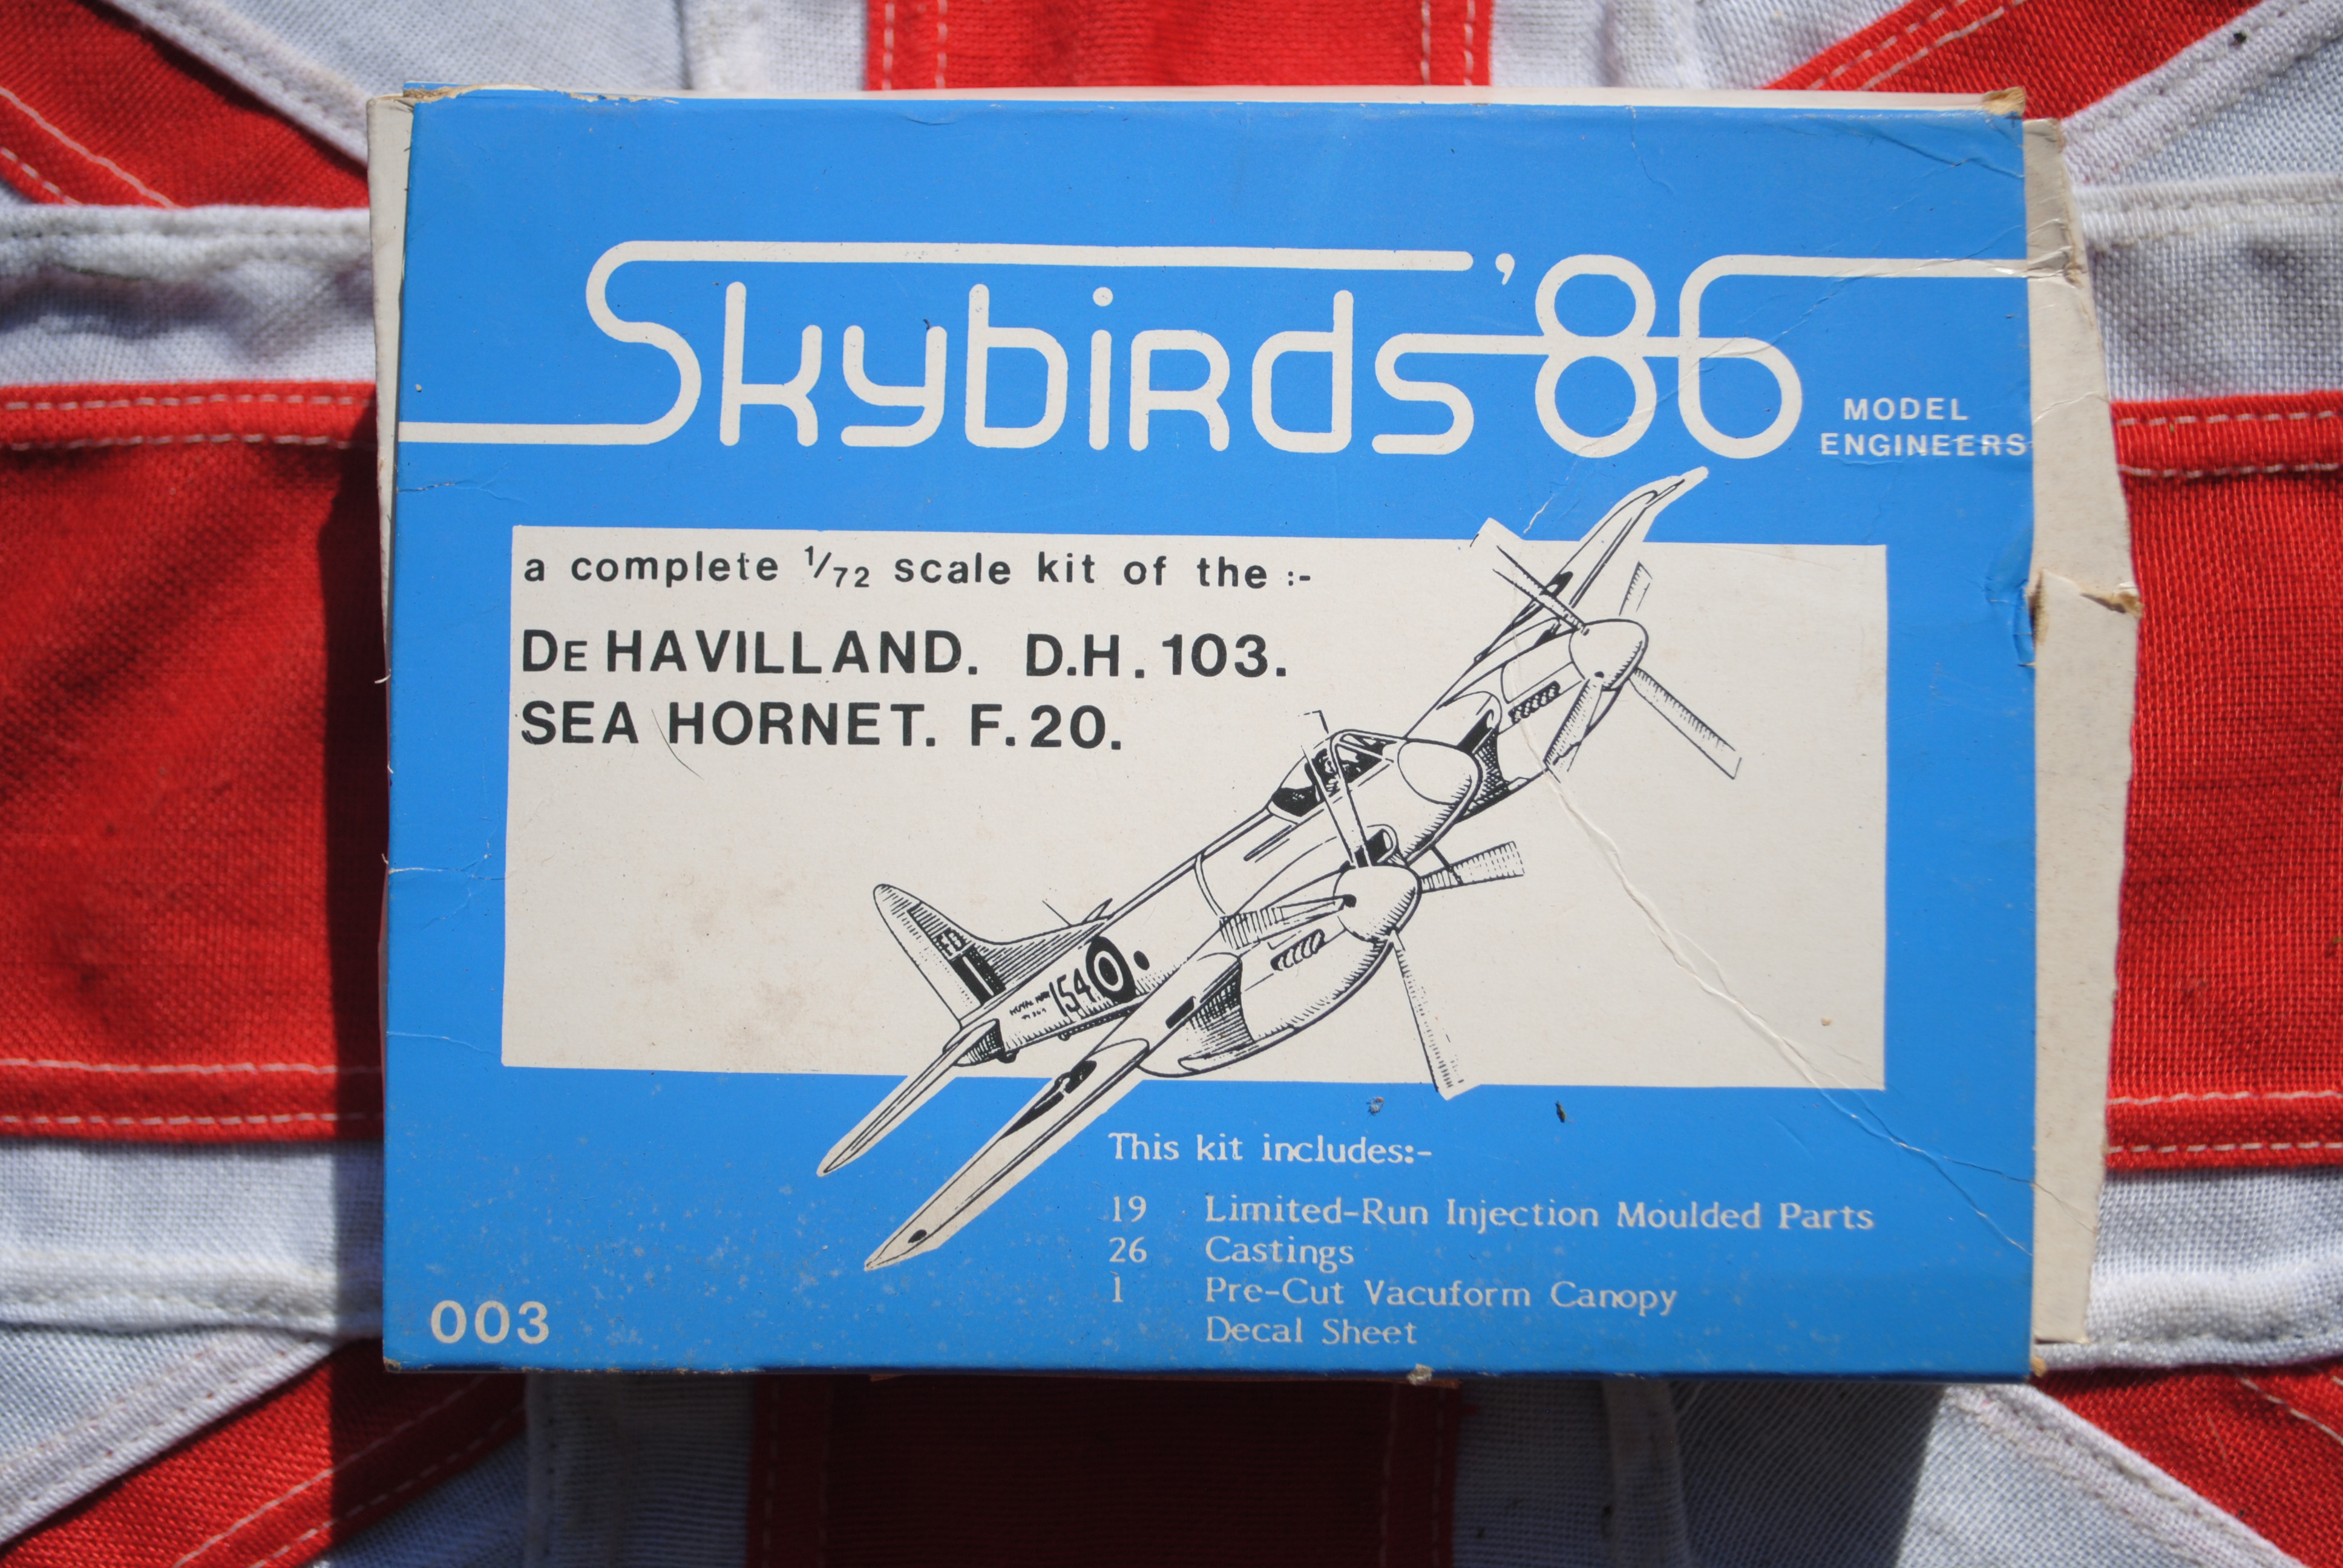 Skybird '86 003 de Havilland D.H.103 Sea Hornet F.20